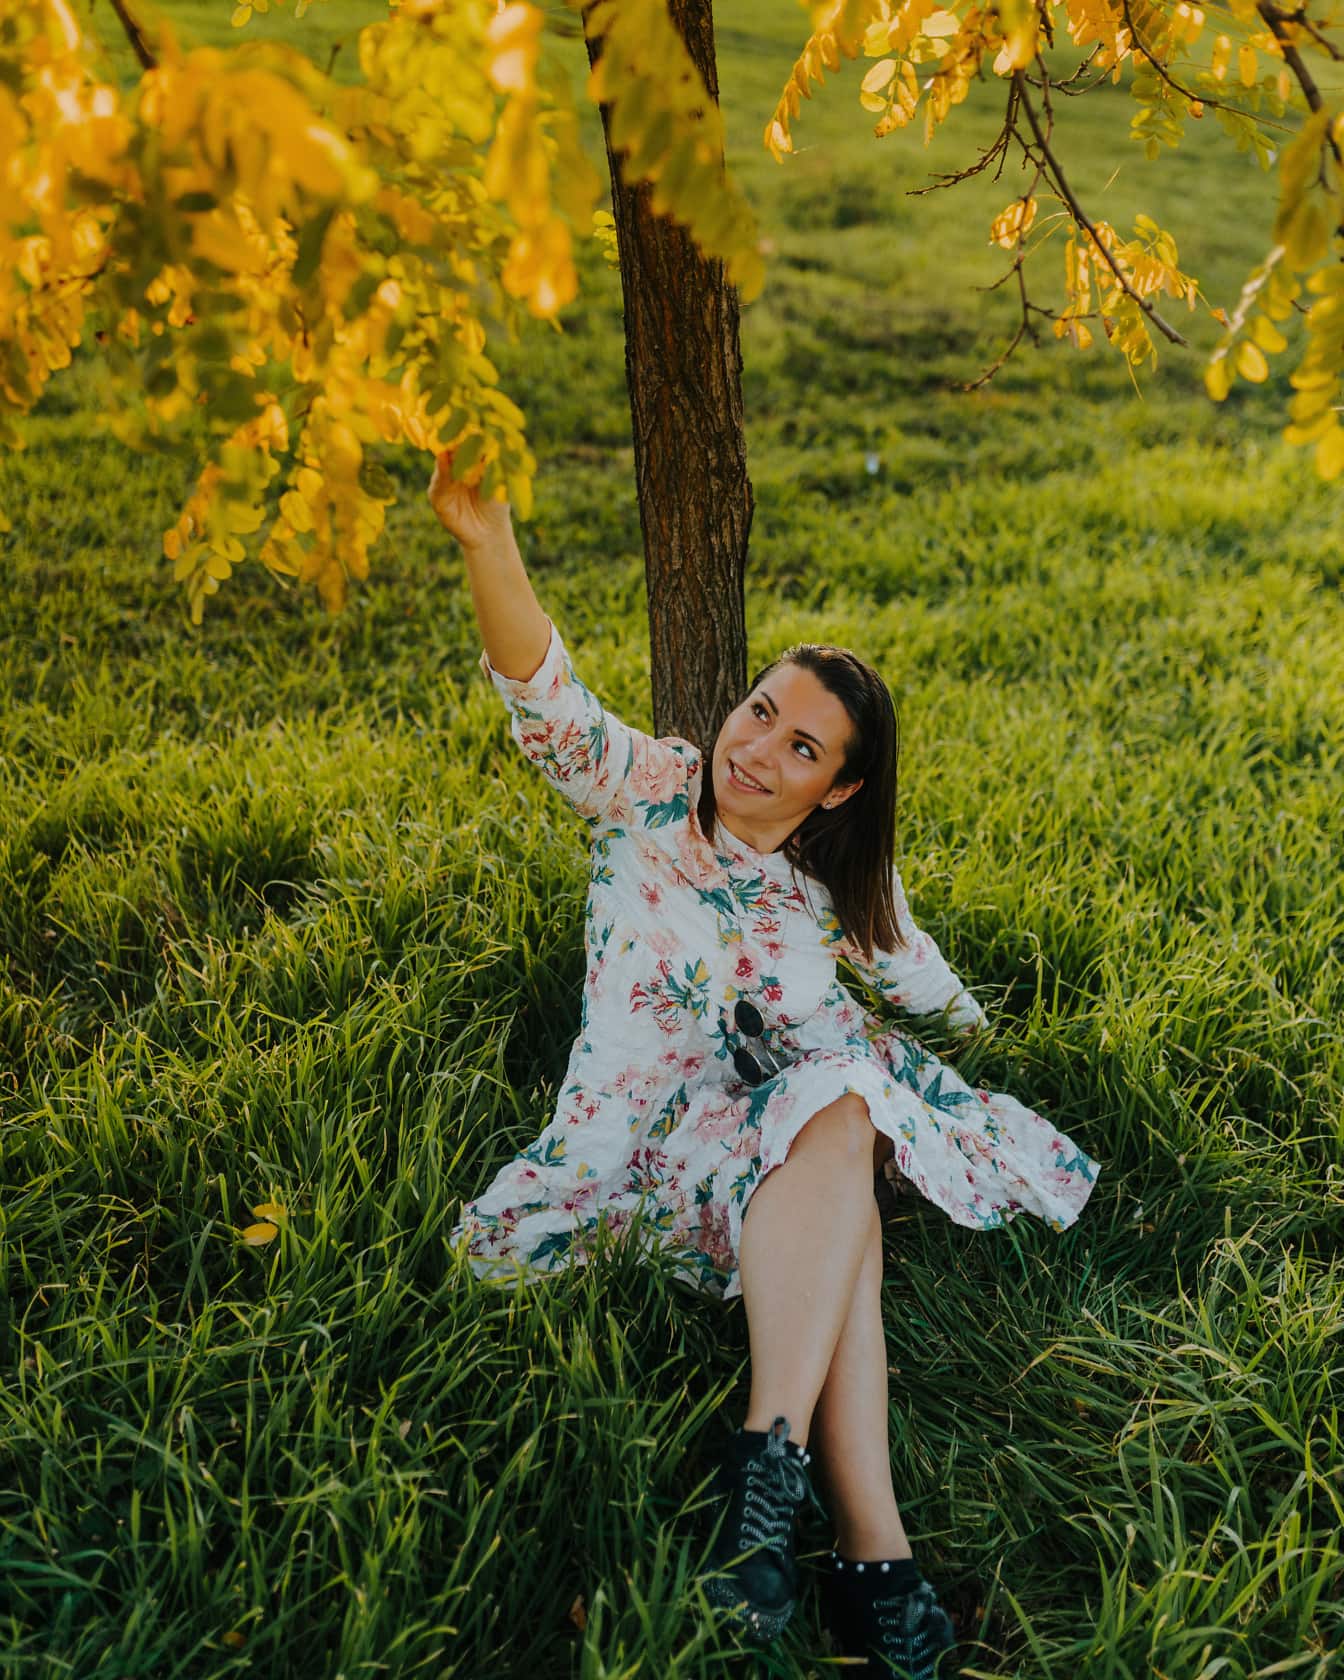 Schitterende vrolijke donkerbruine vrouwenzitting onder een boom in met gras begroeide weide